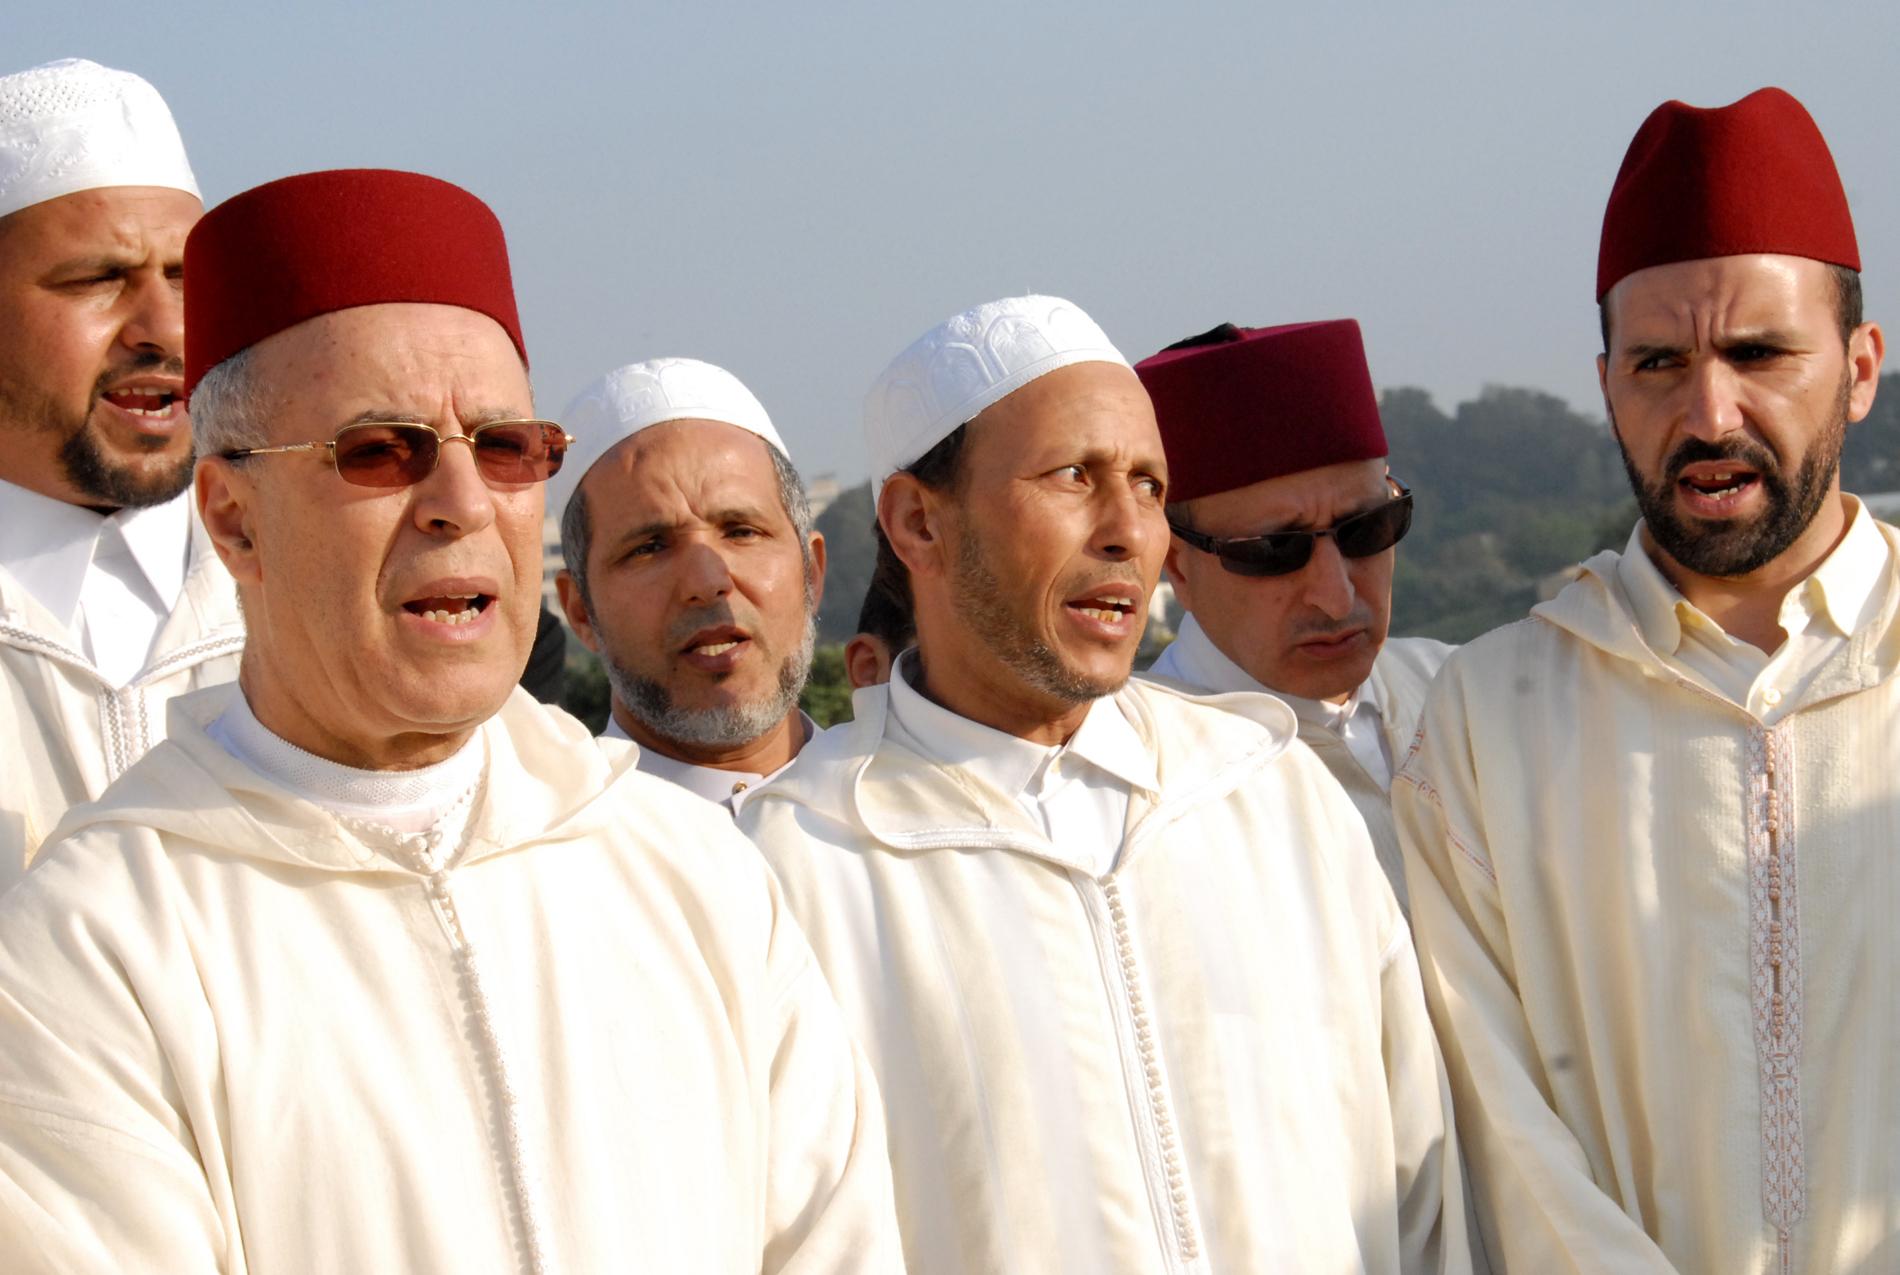 المغرب .. قرار بمراقبة حسابات التواصل الاجتماعي لأئمة الدين